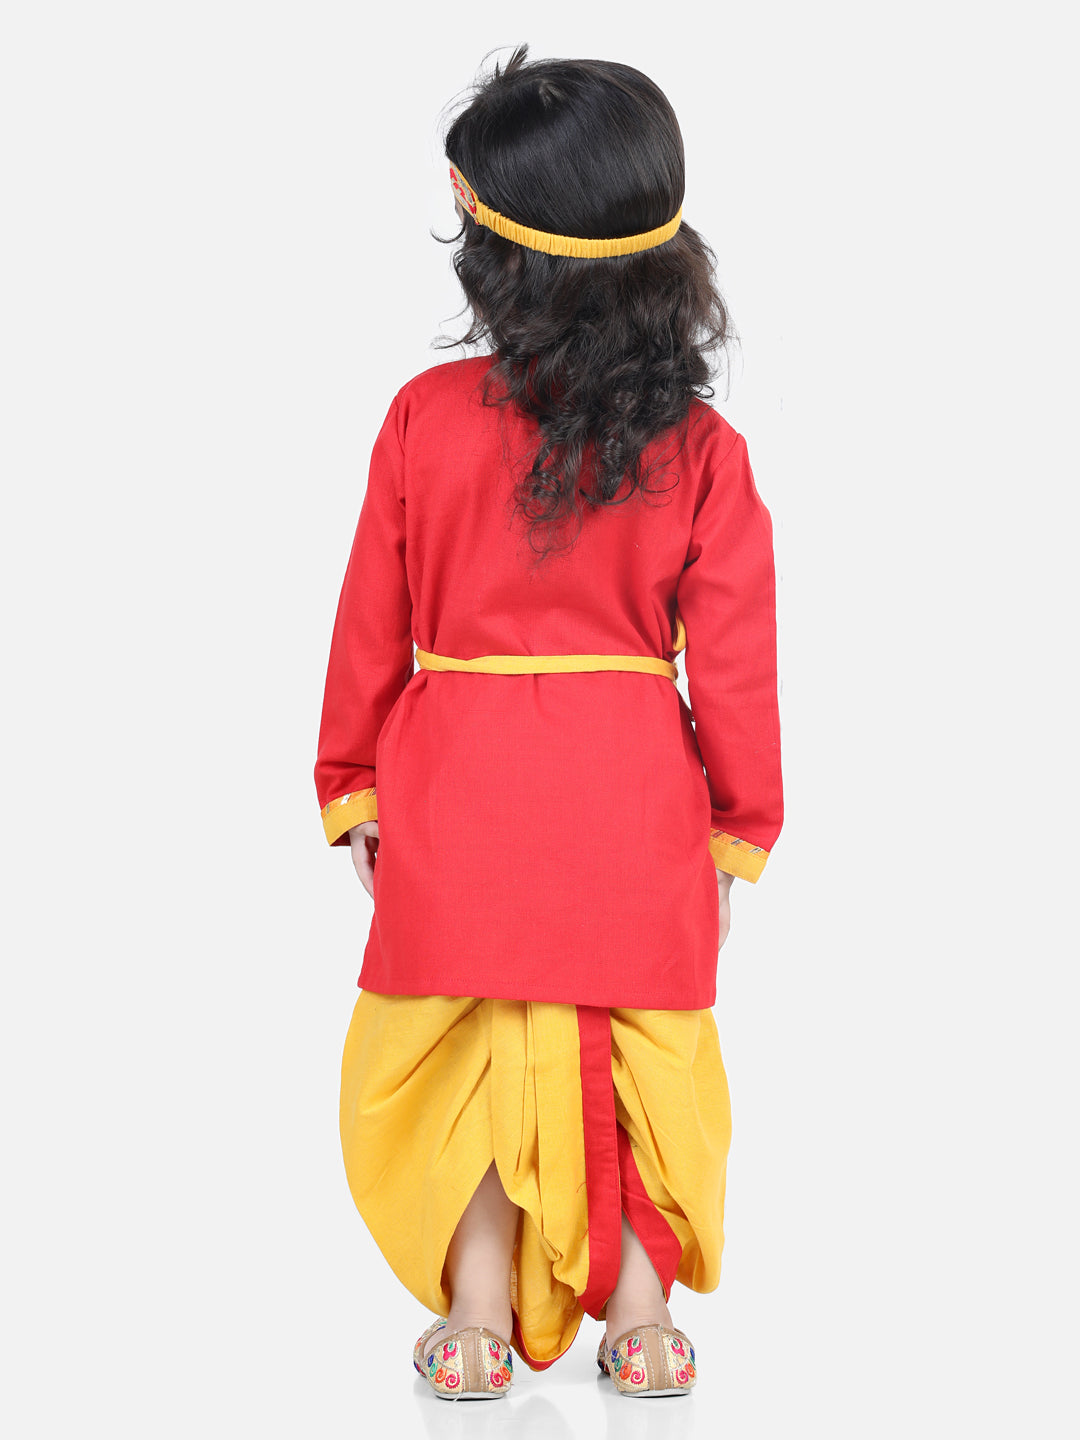 BownBee Cotton Janmasthami Embroidered Kanhaiya Dhoti Kurta for Boys  Dhoti Top Radha with mukut belt bansuri Red